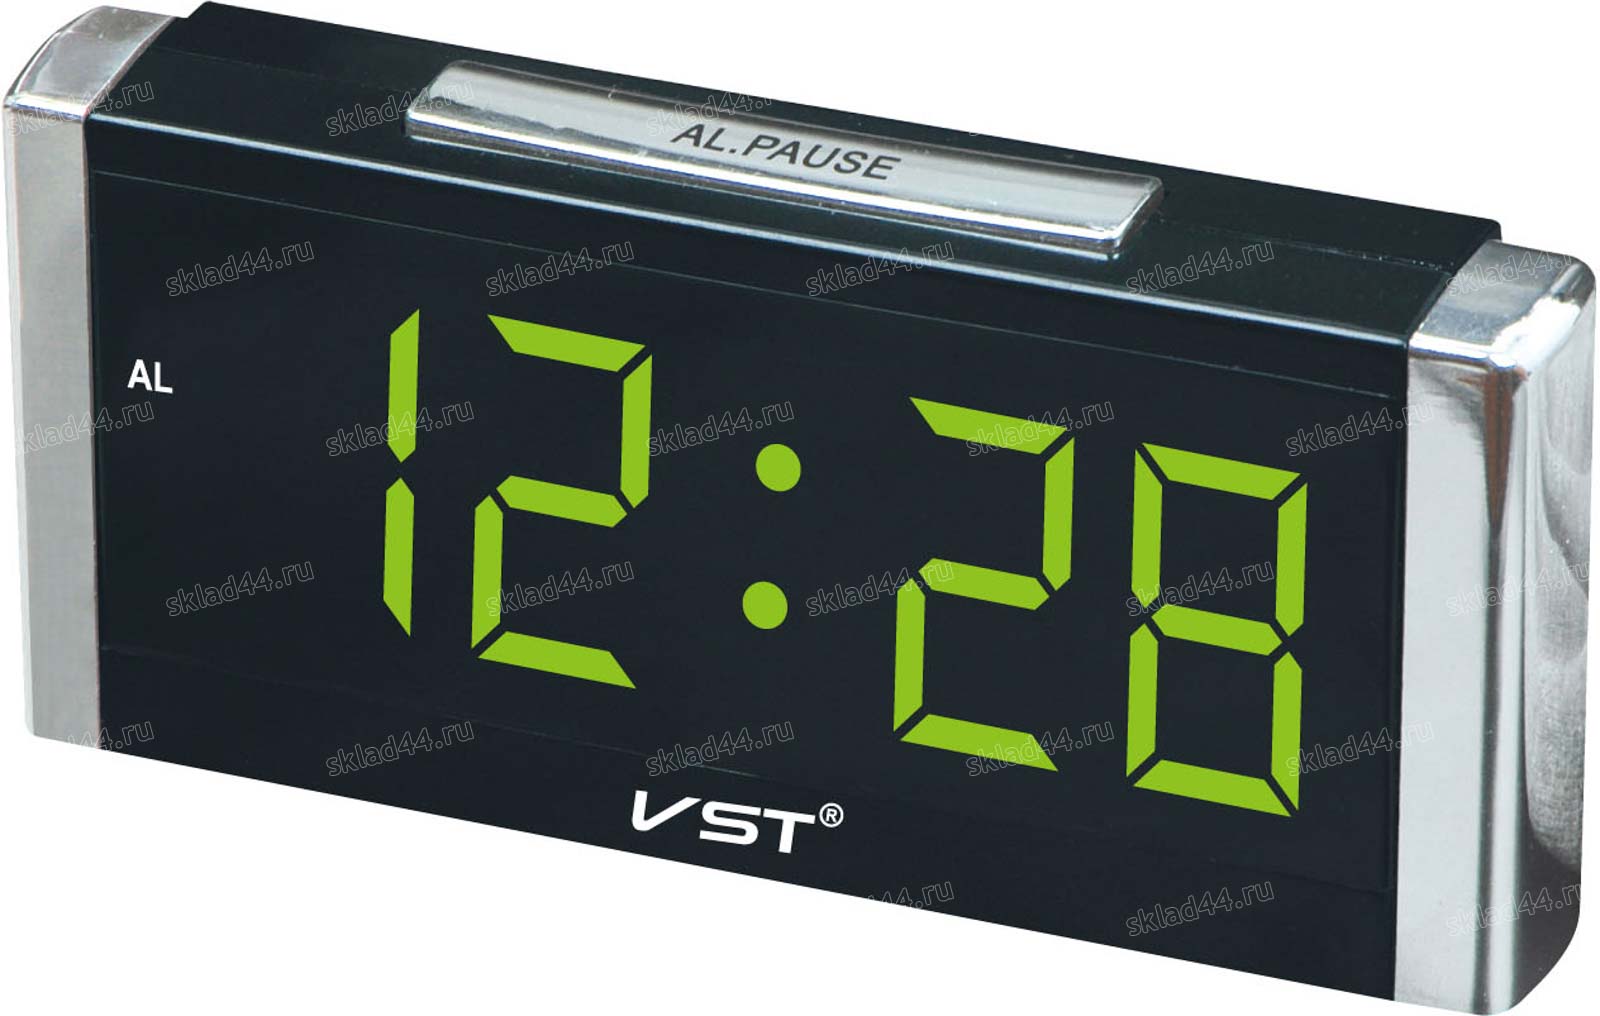 Vst часы как установить время. Часы VST 731. Электронные часы VST 731w. Vst731-1. Электронные часы VST-731w-4 (черные с ярко-зелеными цифрами).